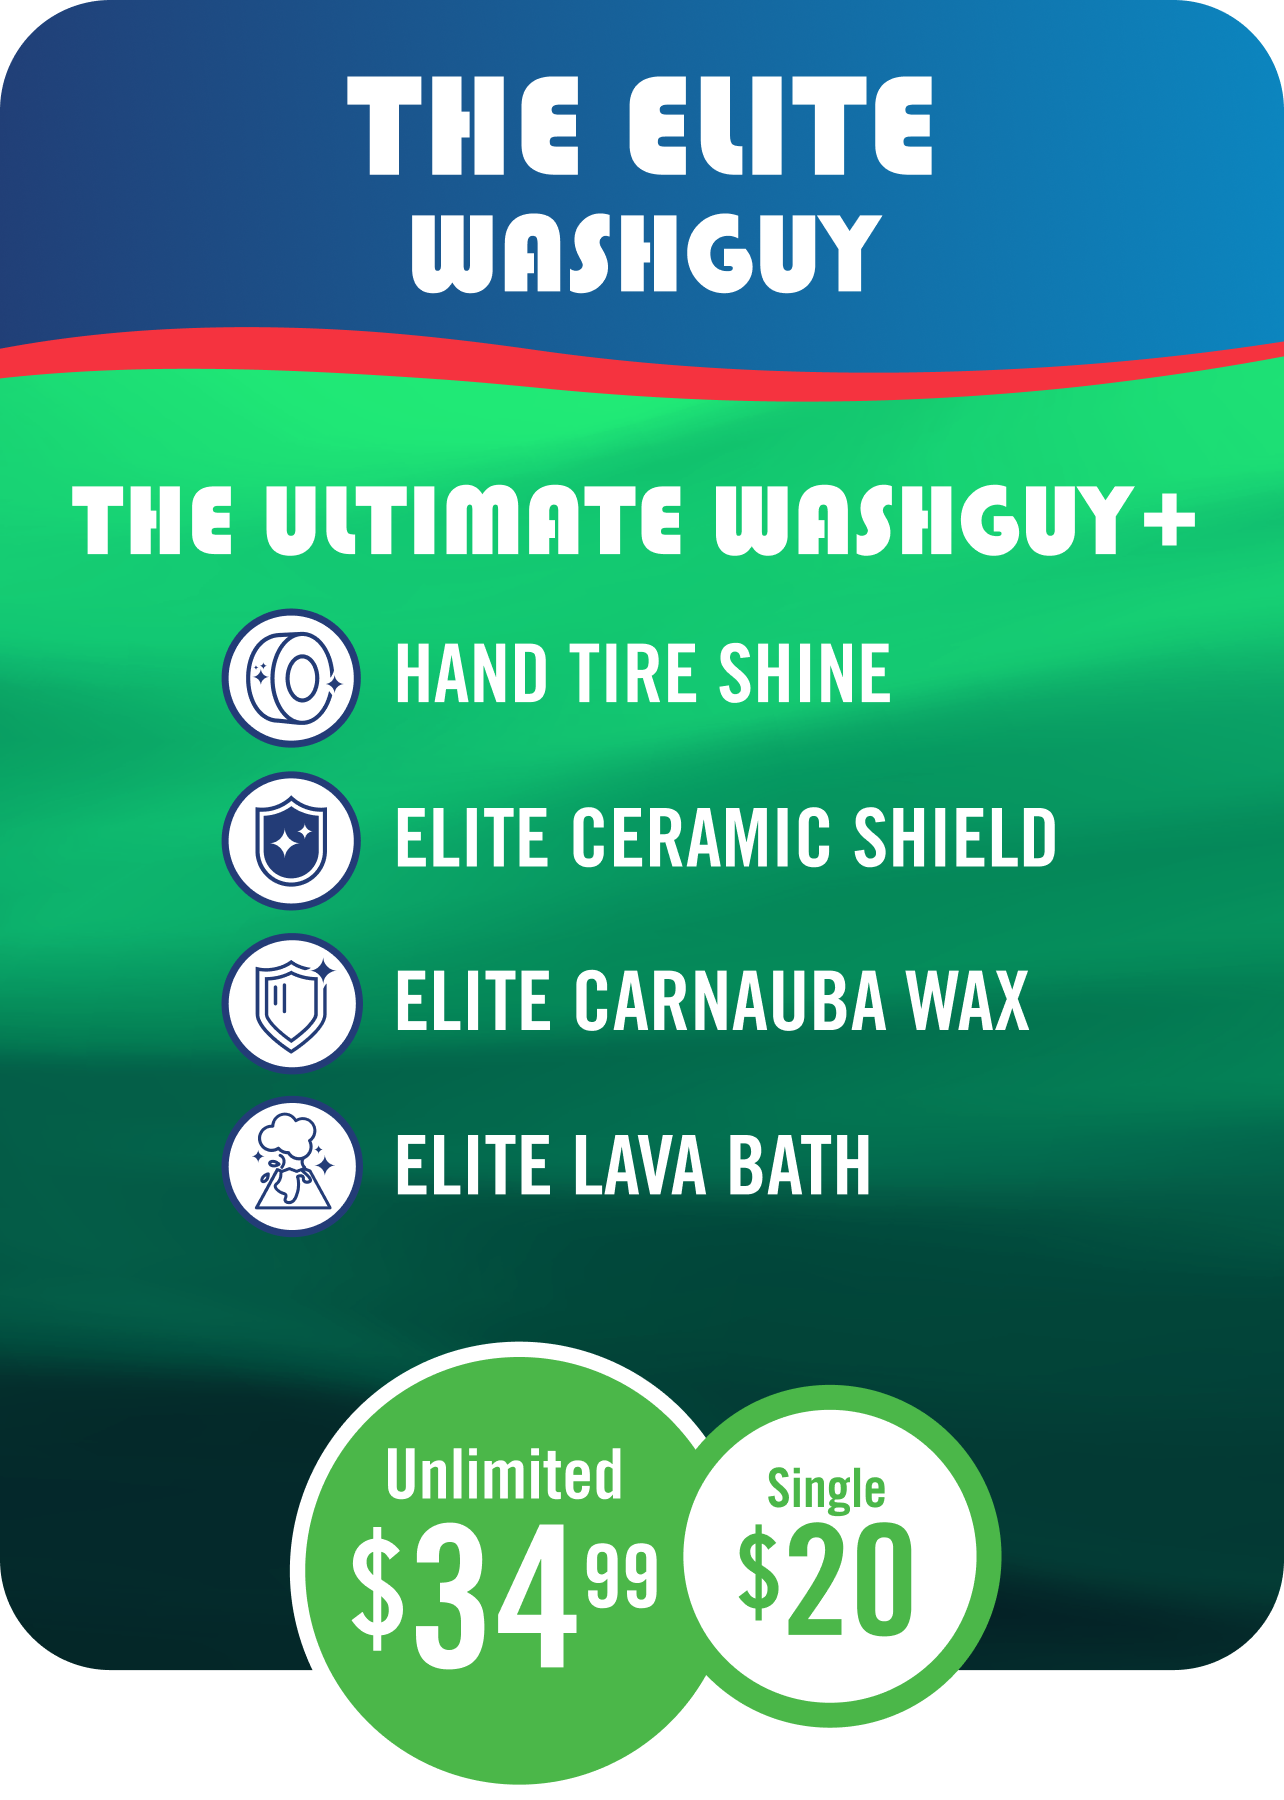 The Elite Washguy Wash Package